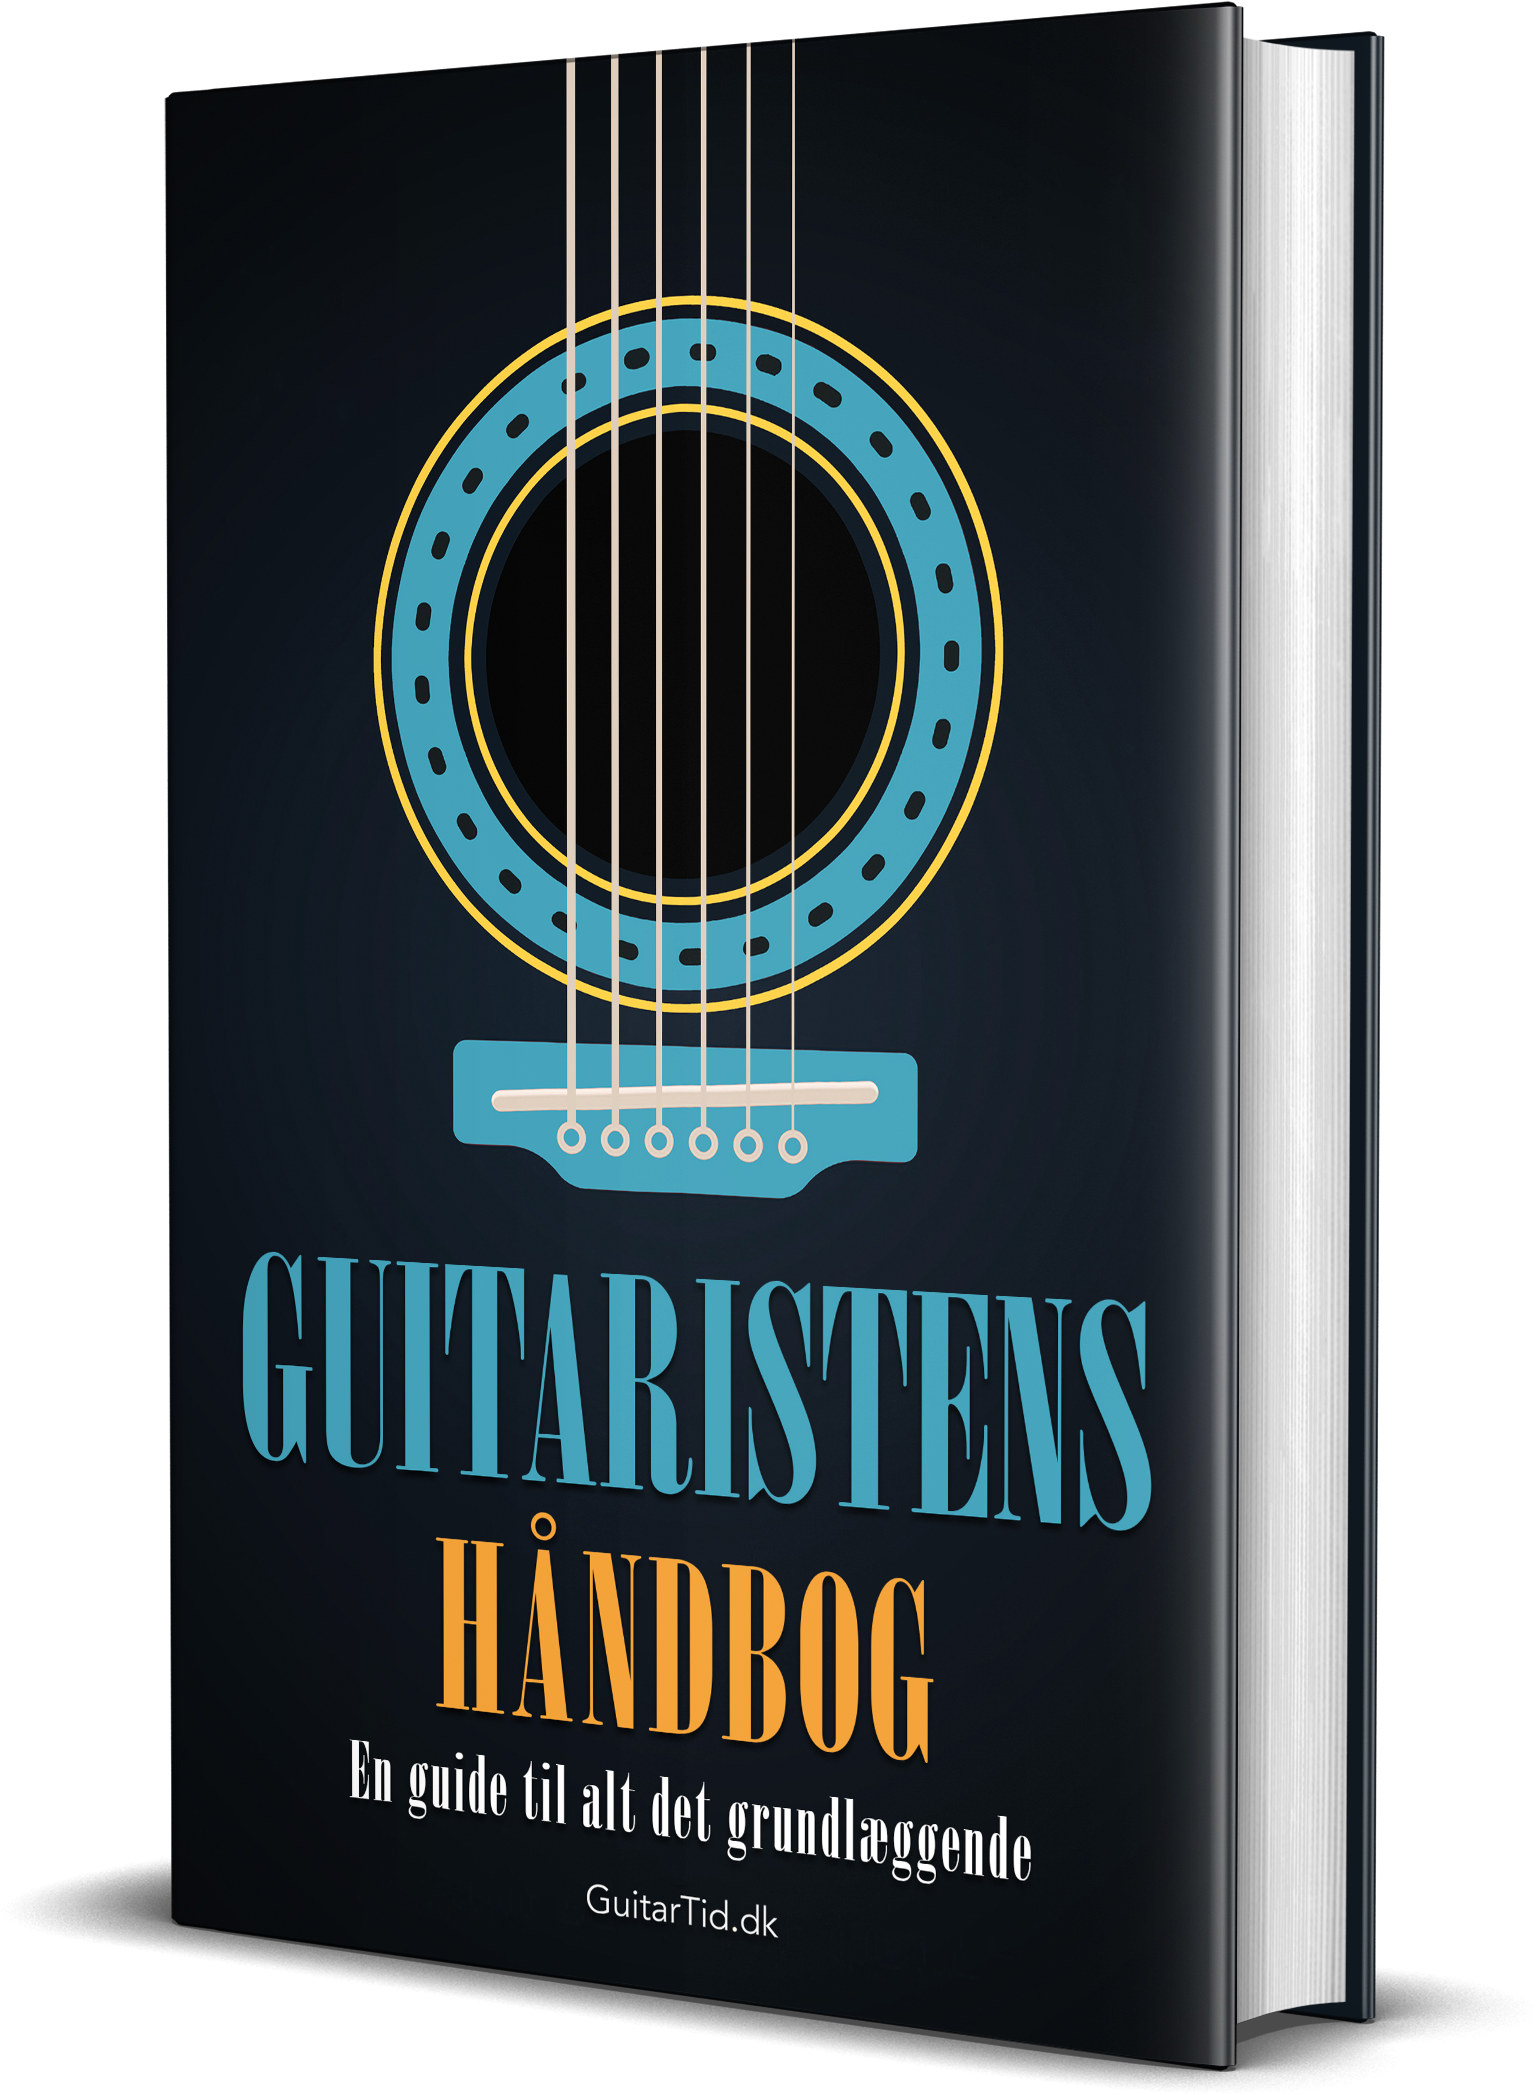 Forside til e-bogen "Guitaristens Håndbog"